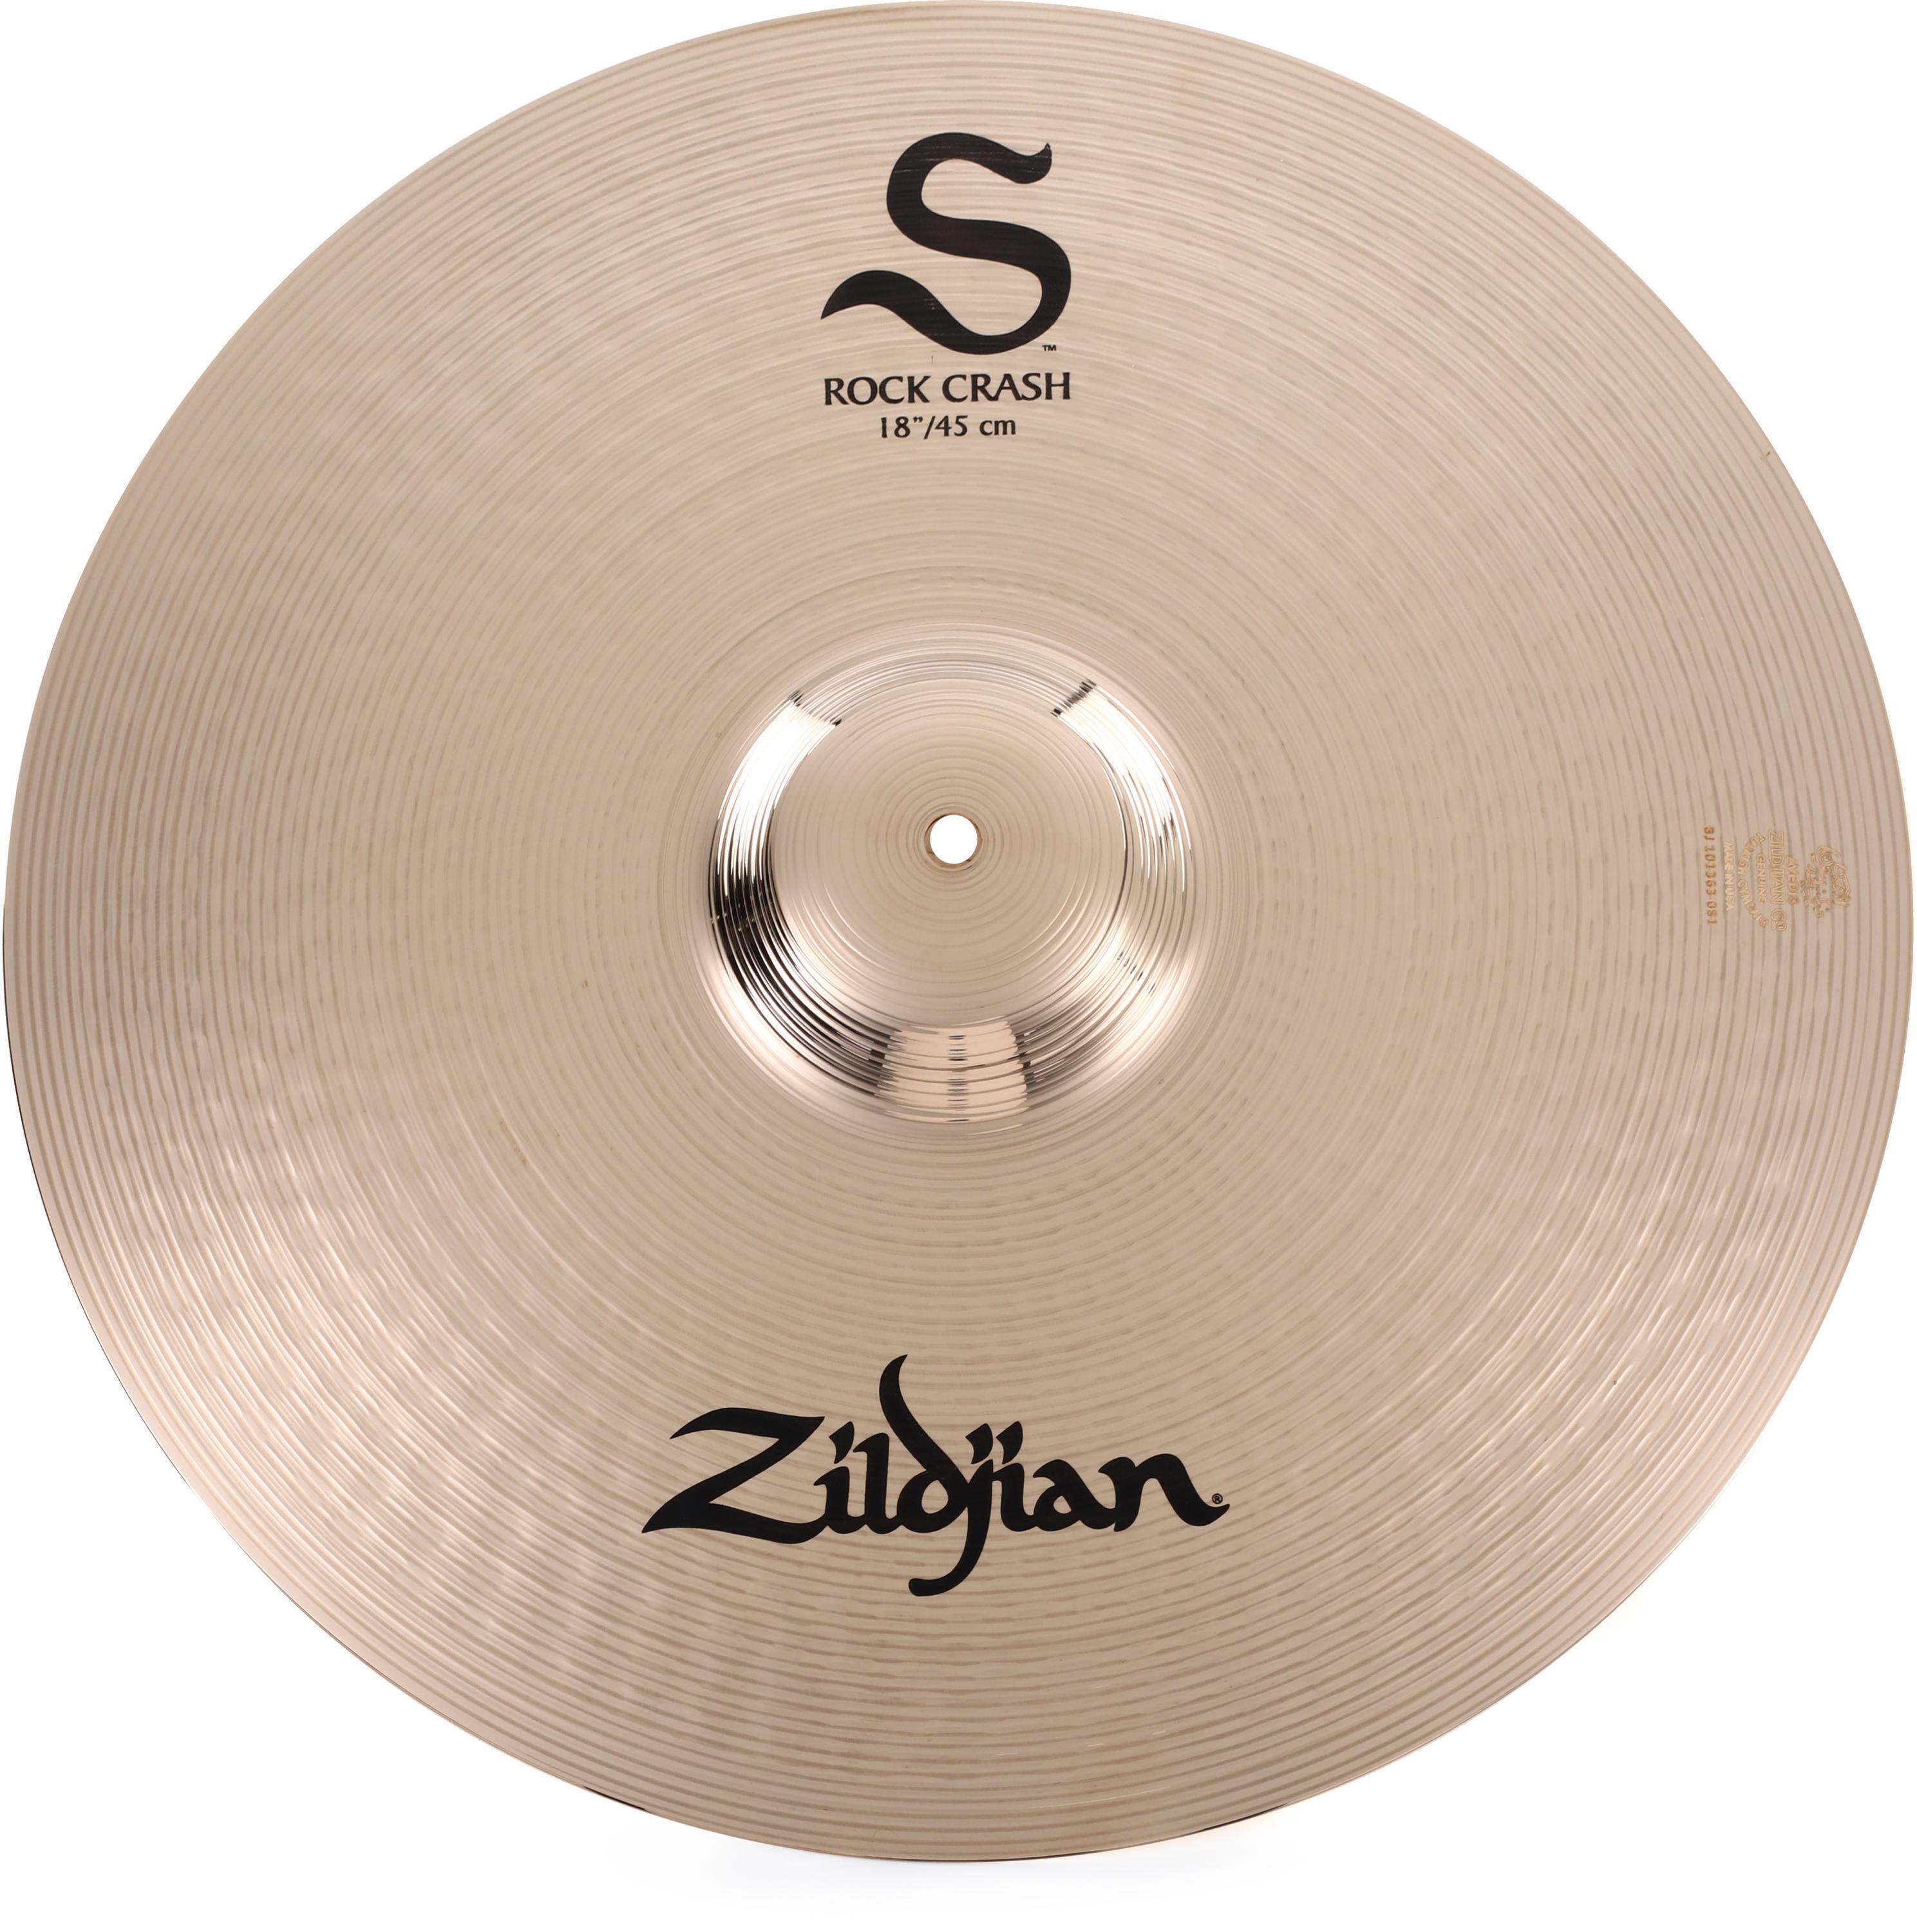 Zildjian 18 inch S Series Rock Crash Cymbal